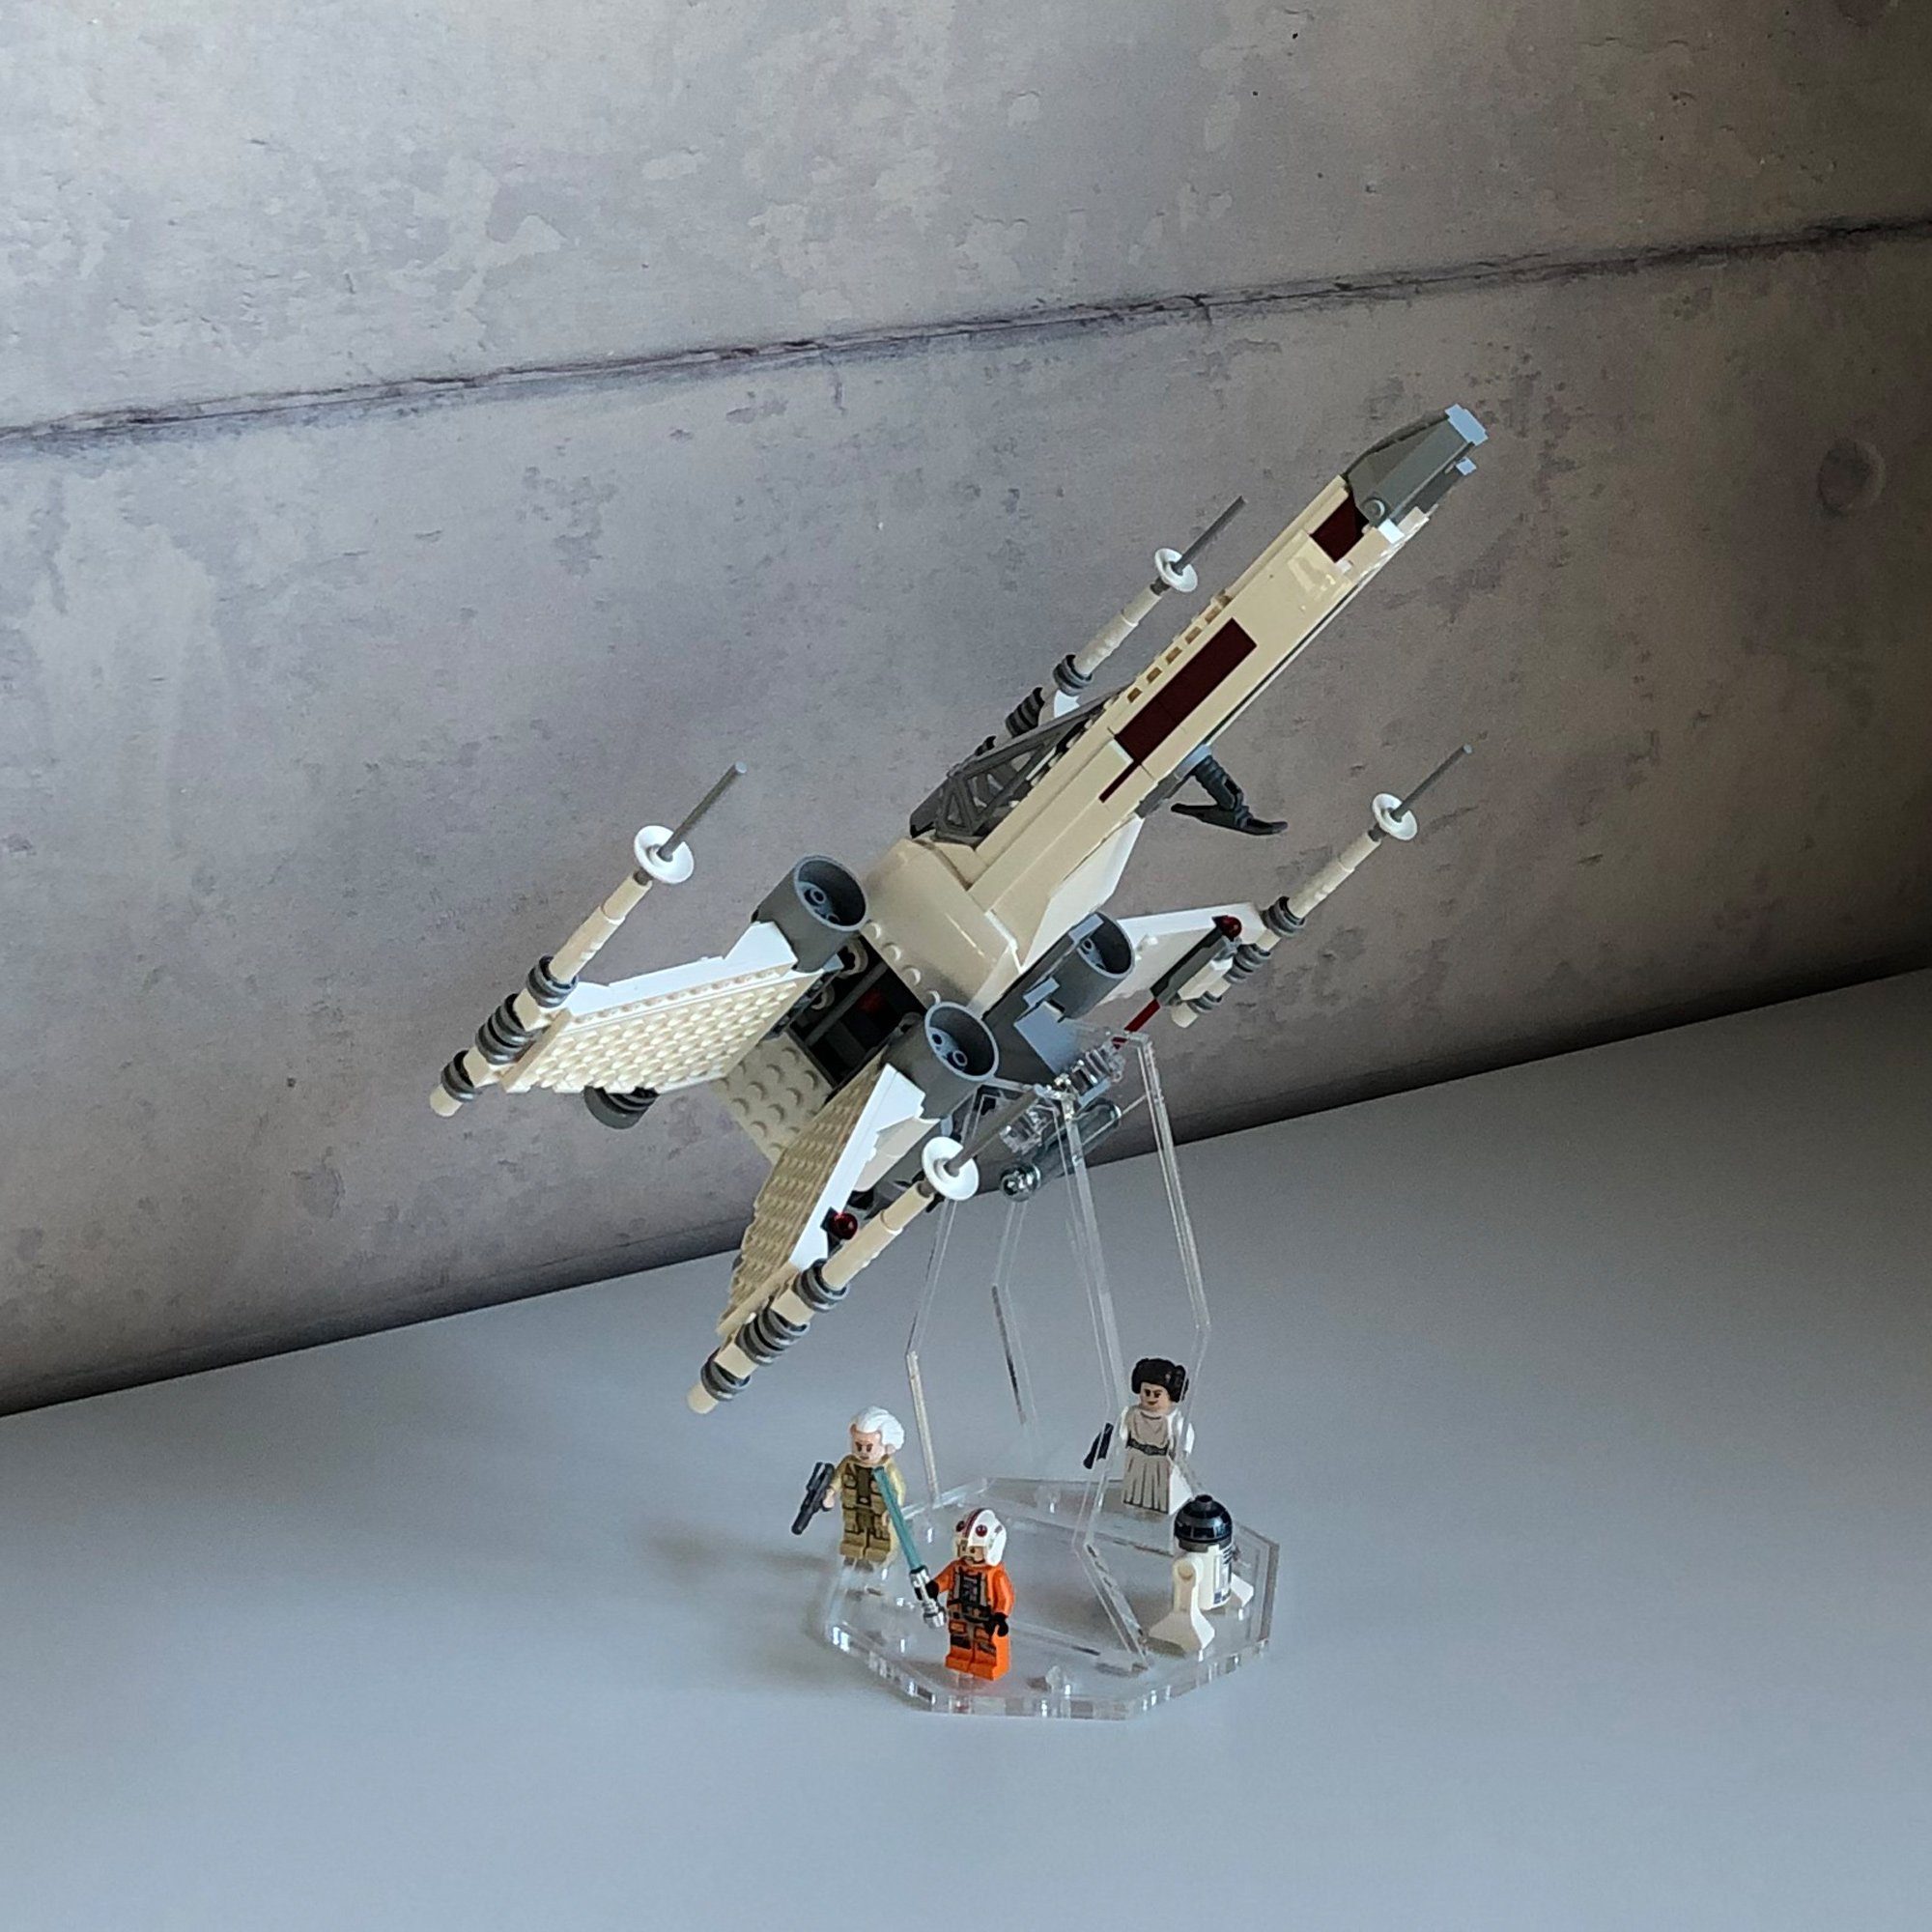 AREA17 Standfuß Acryl Display Stand für LEGO 75301 Luke Skywalker's X-Wing  Fighter - 3 Größen wählbar - Acryl Standfuß - Ausstellungsständer  verschiedene Winkel und Positionen einstellbar., Passend für alle LEGO  75301 und